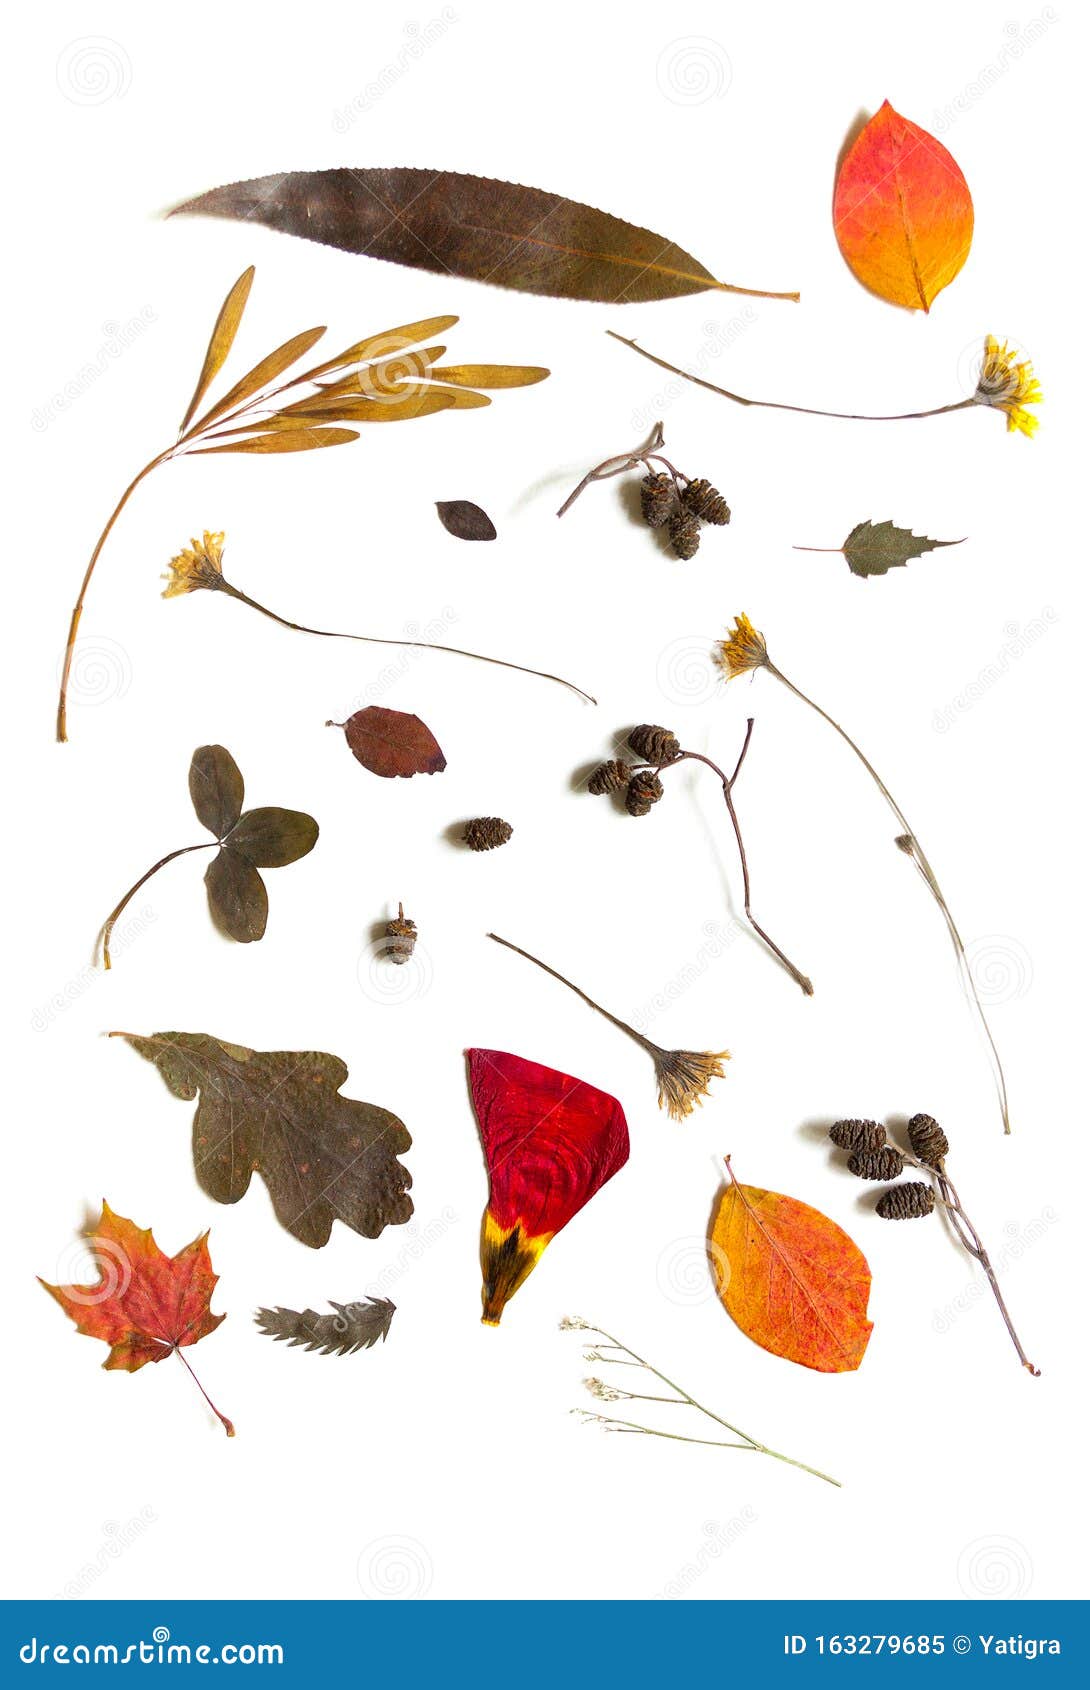 Artículos Del Herbario Semillas De árbol, Hojas Y Flores Silvestres Secas  Imagen de archivo - Imagen de aislado, macro: 163279685